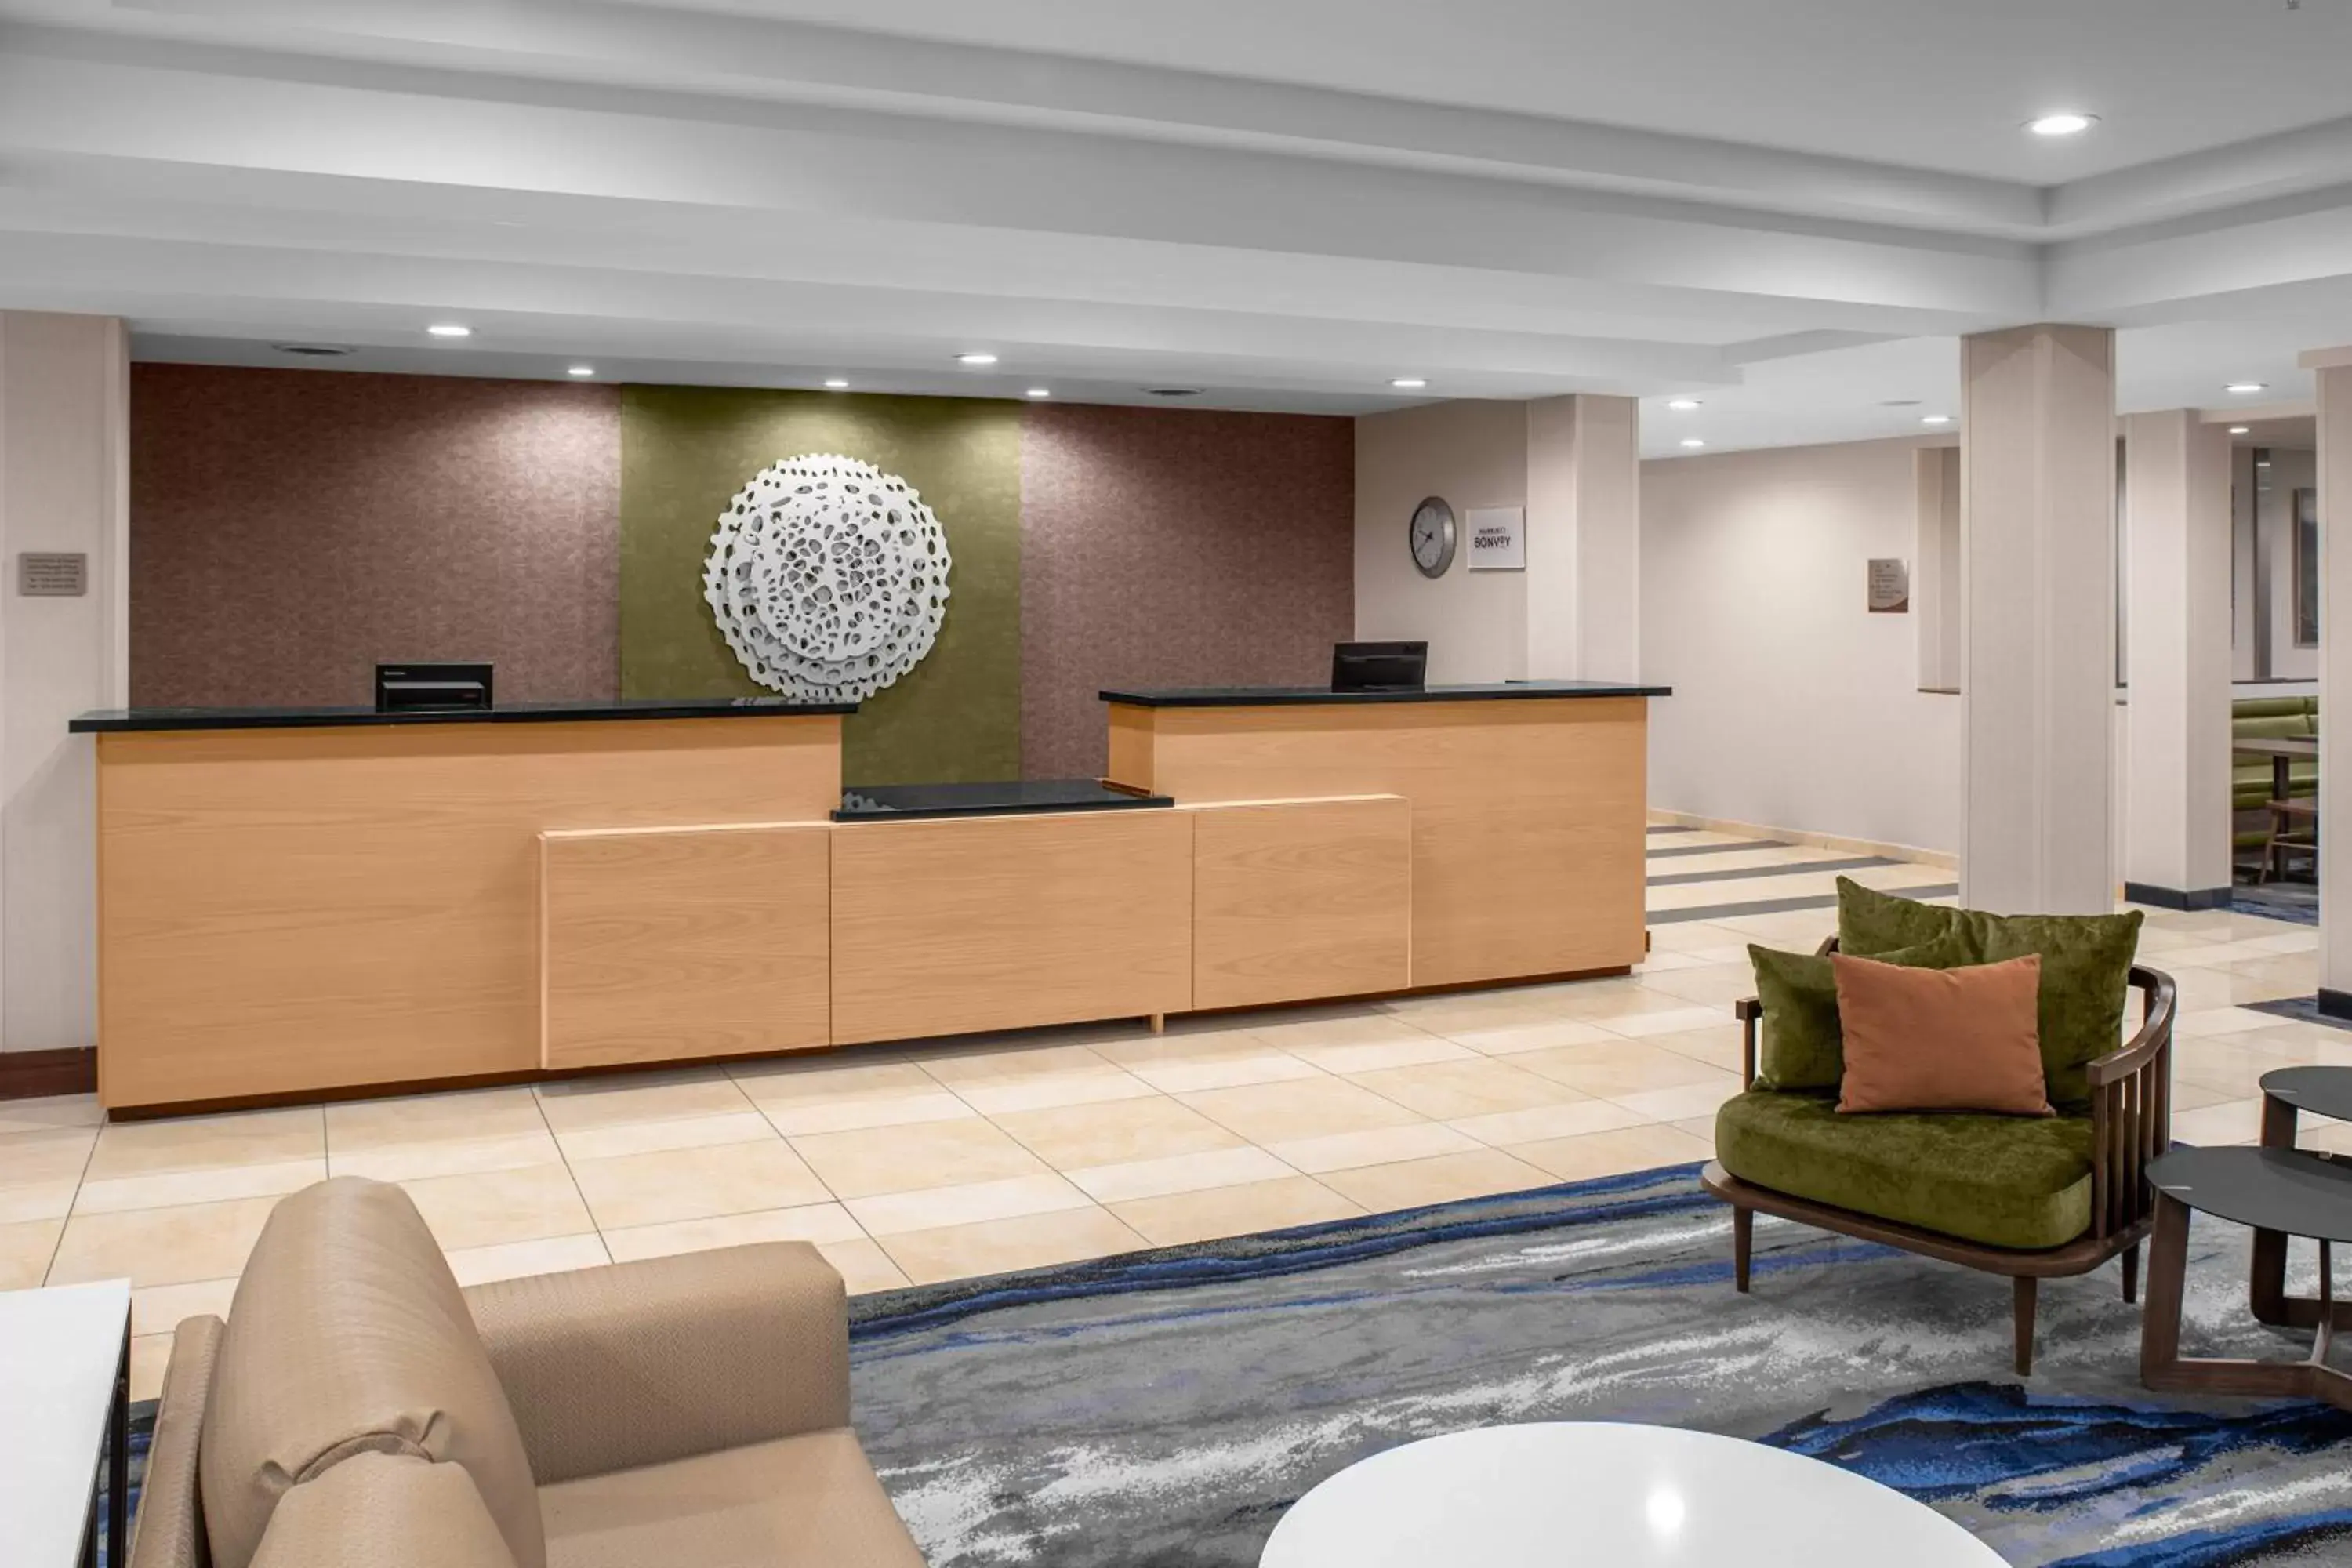 Lobby or reception, Lobby/Reception in Fairfield by Marriott Inn & Suites Columbus Hilliard